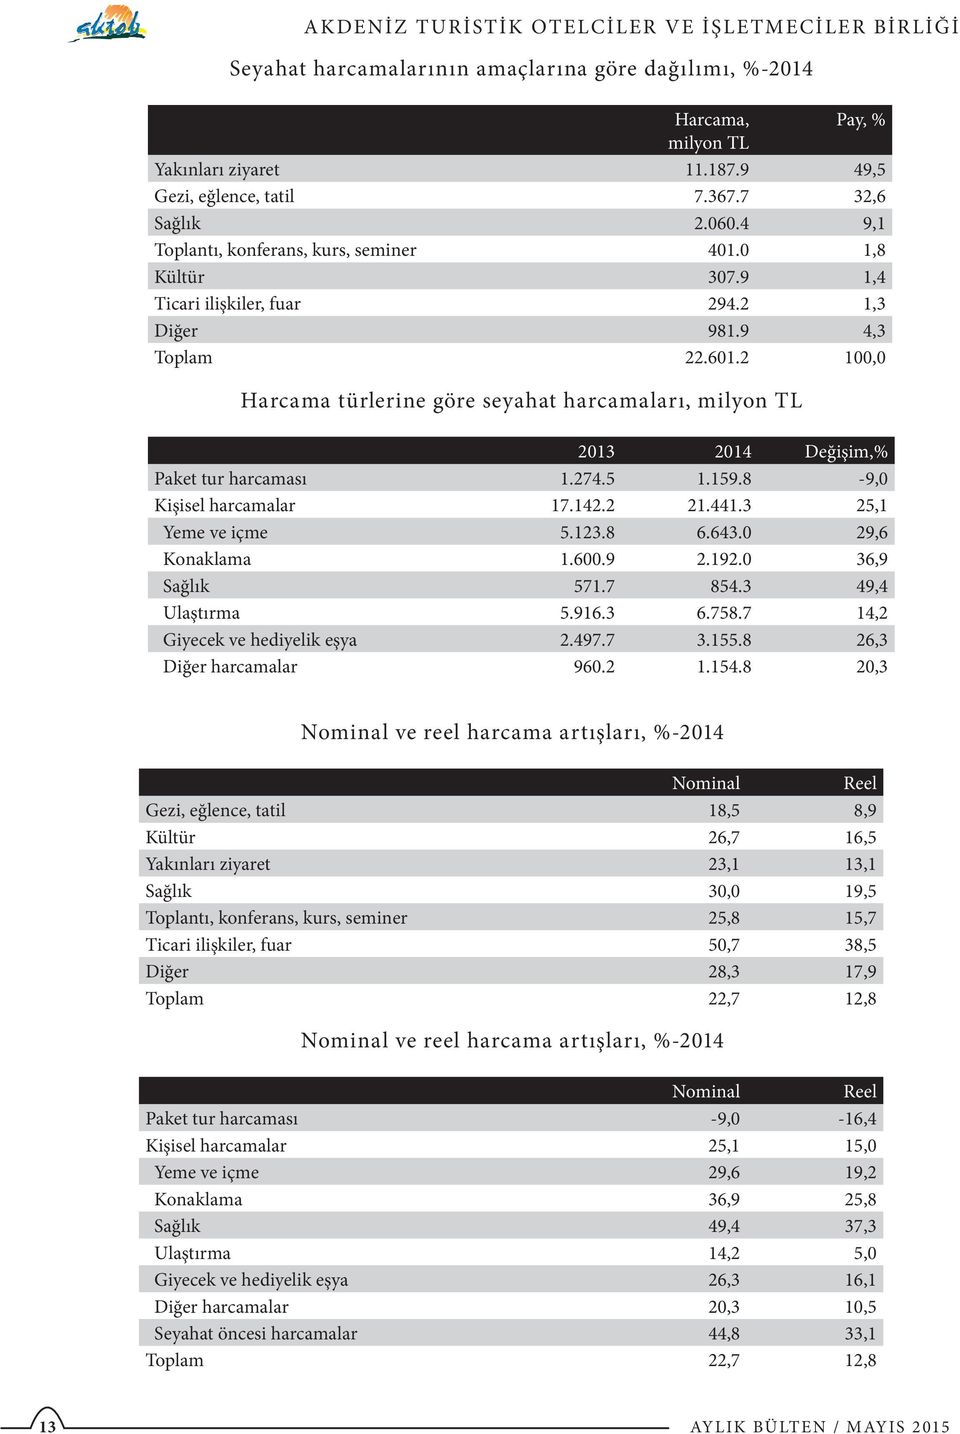 2 100,0 Harcama türlerine göre seyahat harcamaları, milyon TL 2013 2014 Değişim,% Paket tur harcaması 1.274.5 1.159.8-9,0 Kişisel harcamalar 17.142.2 21.441.3 25,1 Yeme ve içme 5.123.8 6.643.